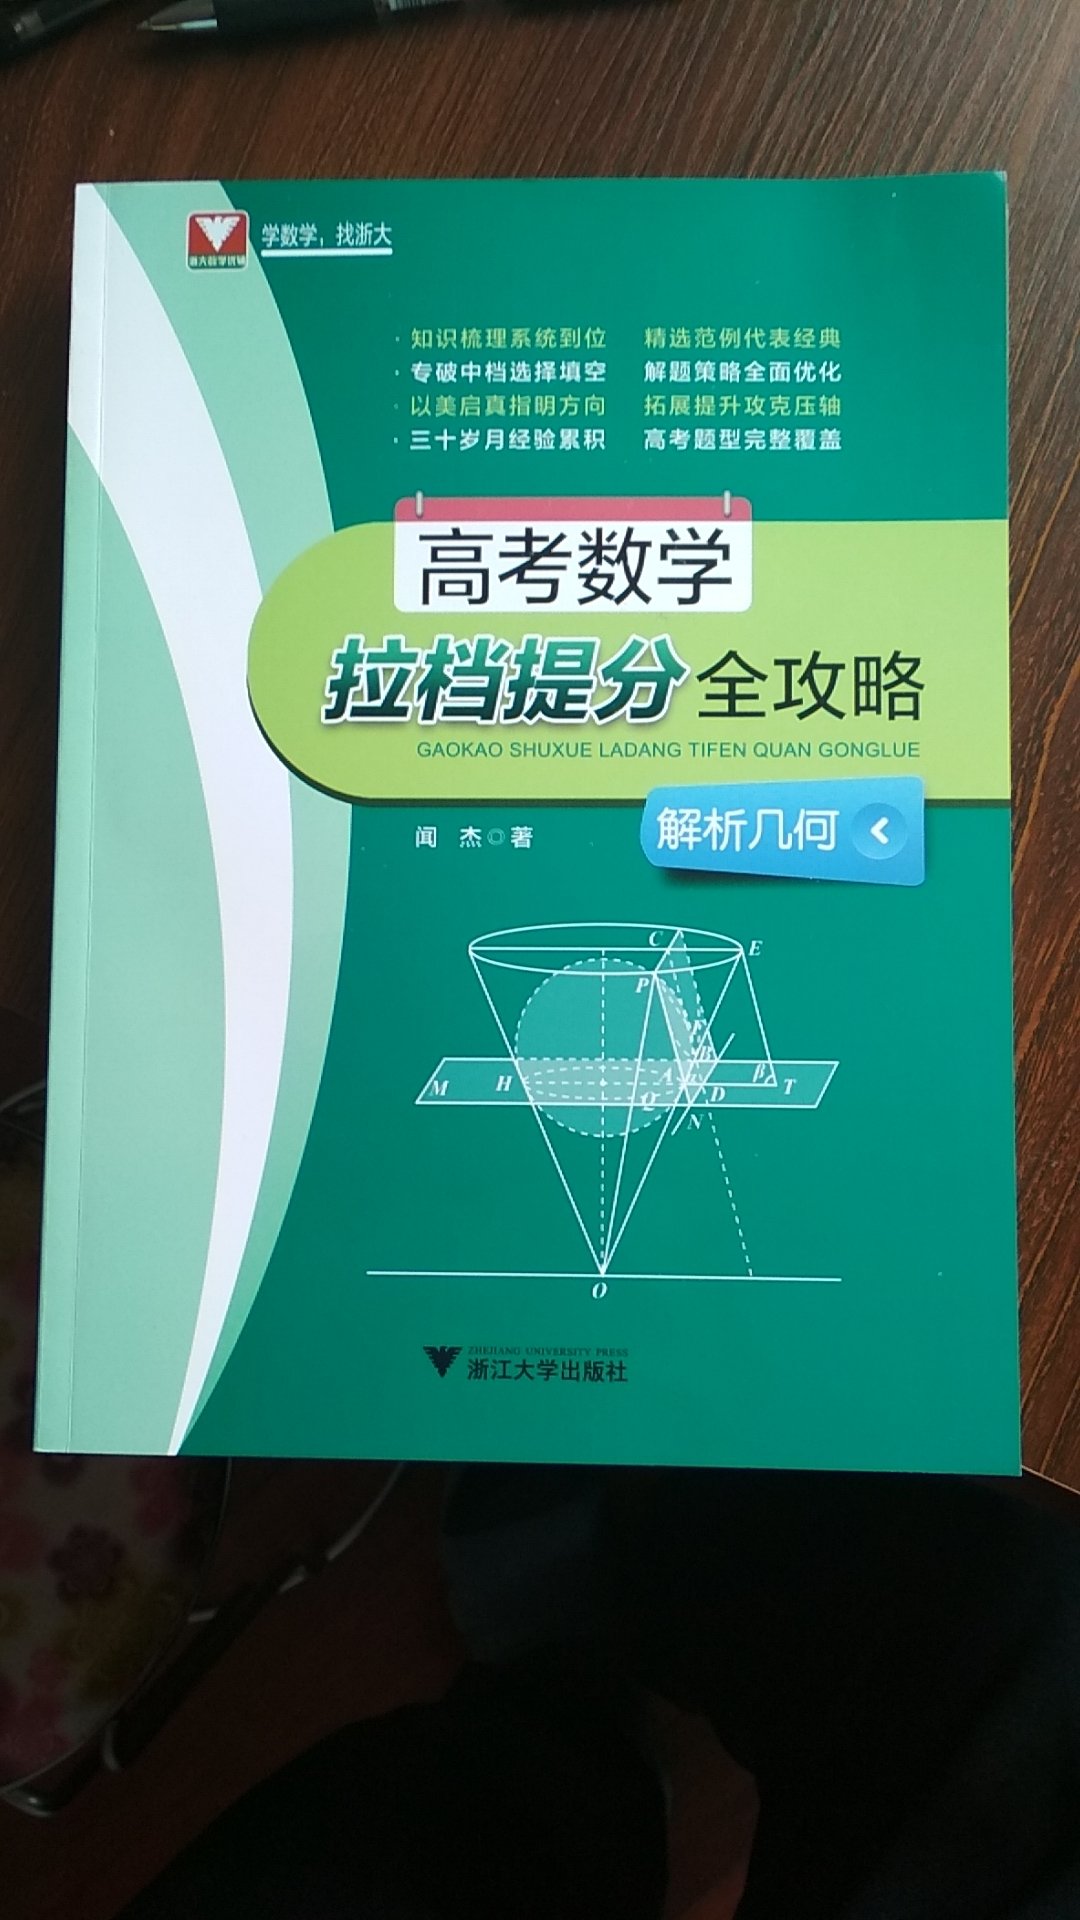 浙江大学出版的这本高考数学。拉分提档全攻略解析几何。只是梳理系统到位，精选范例代表经典。